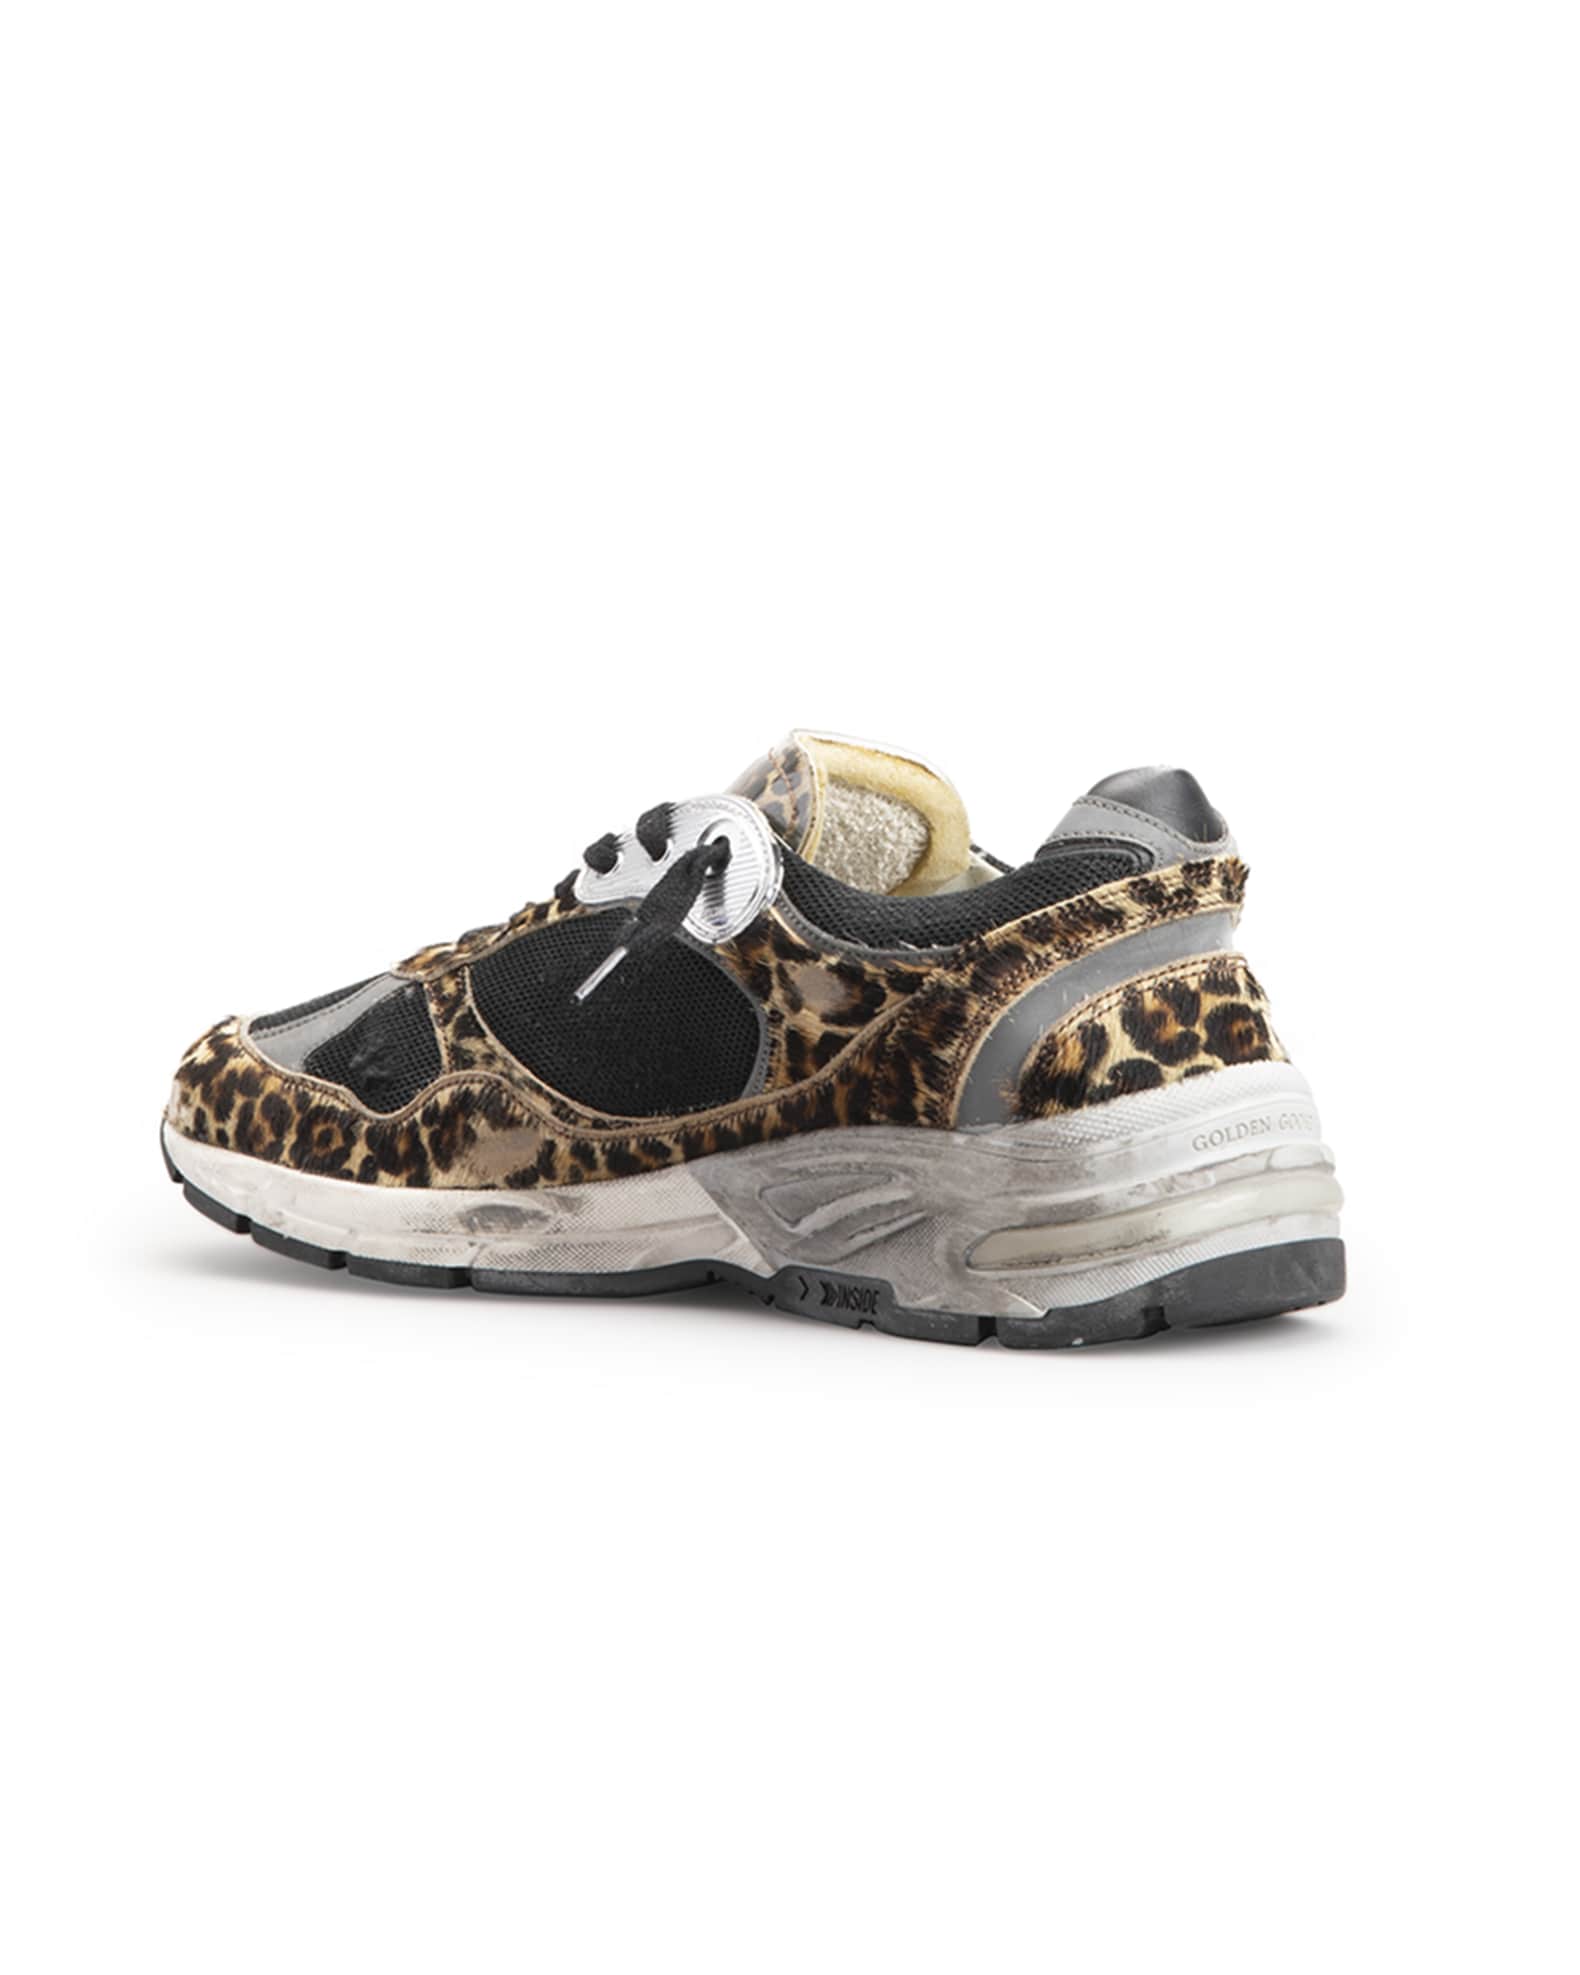 Inleg Vakantie Attent Golden Goose Star Dad Leopard Running Sneakers | Neiman Marcus